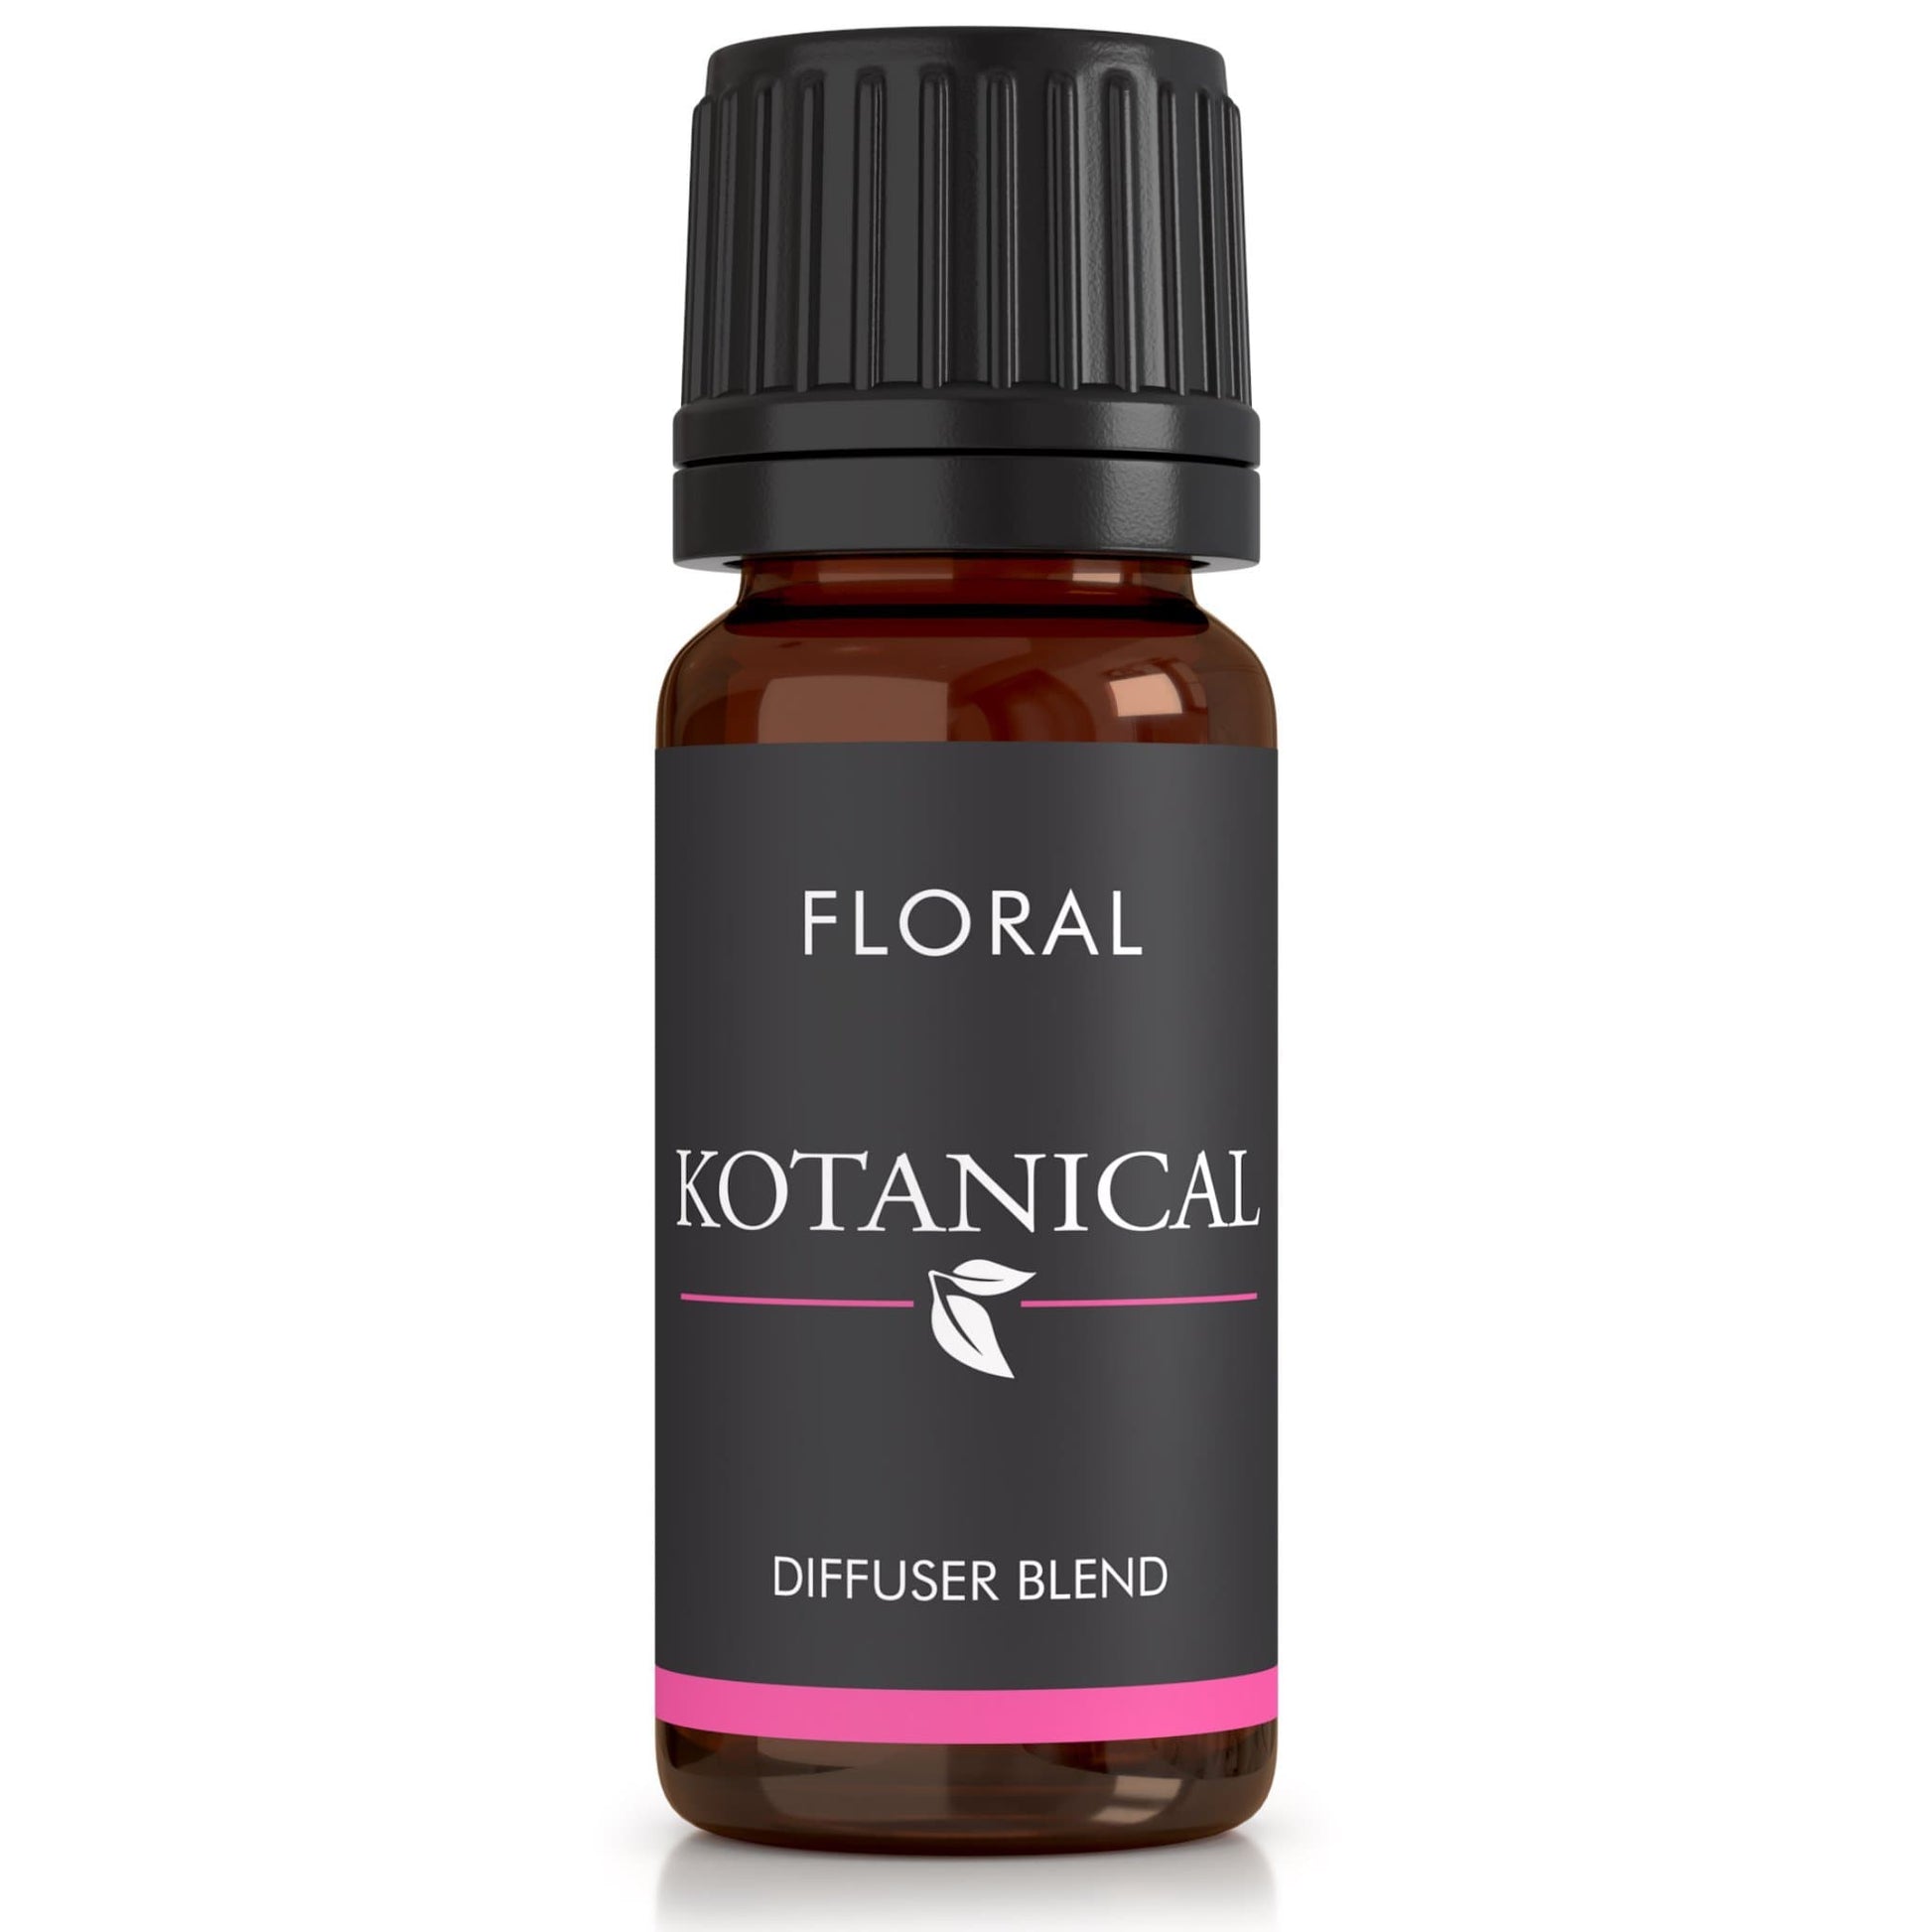 Floral Oil Diffuser Blend essential oil kotanical 